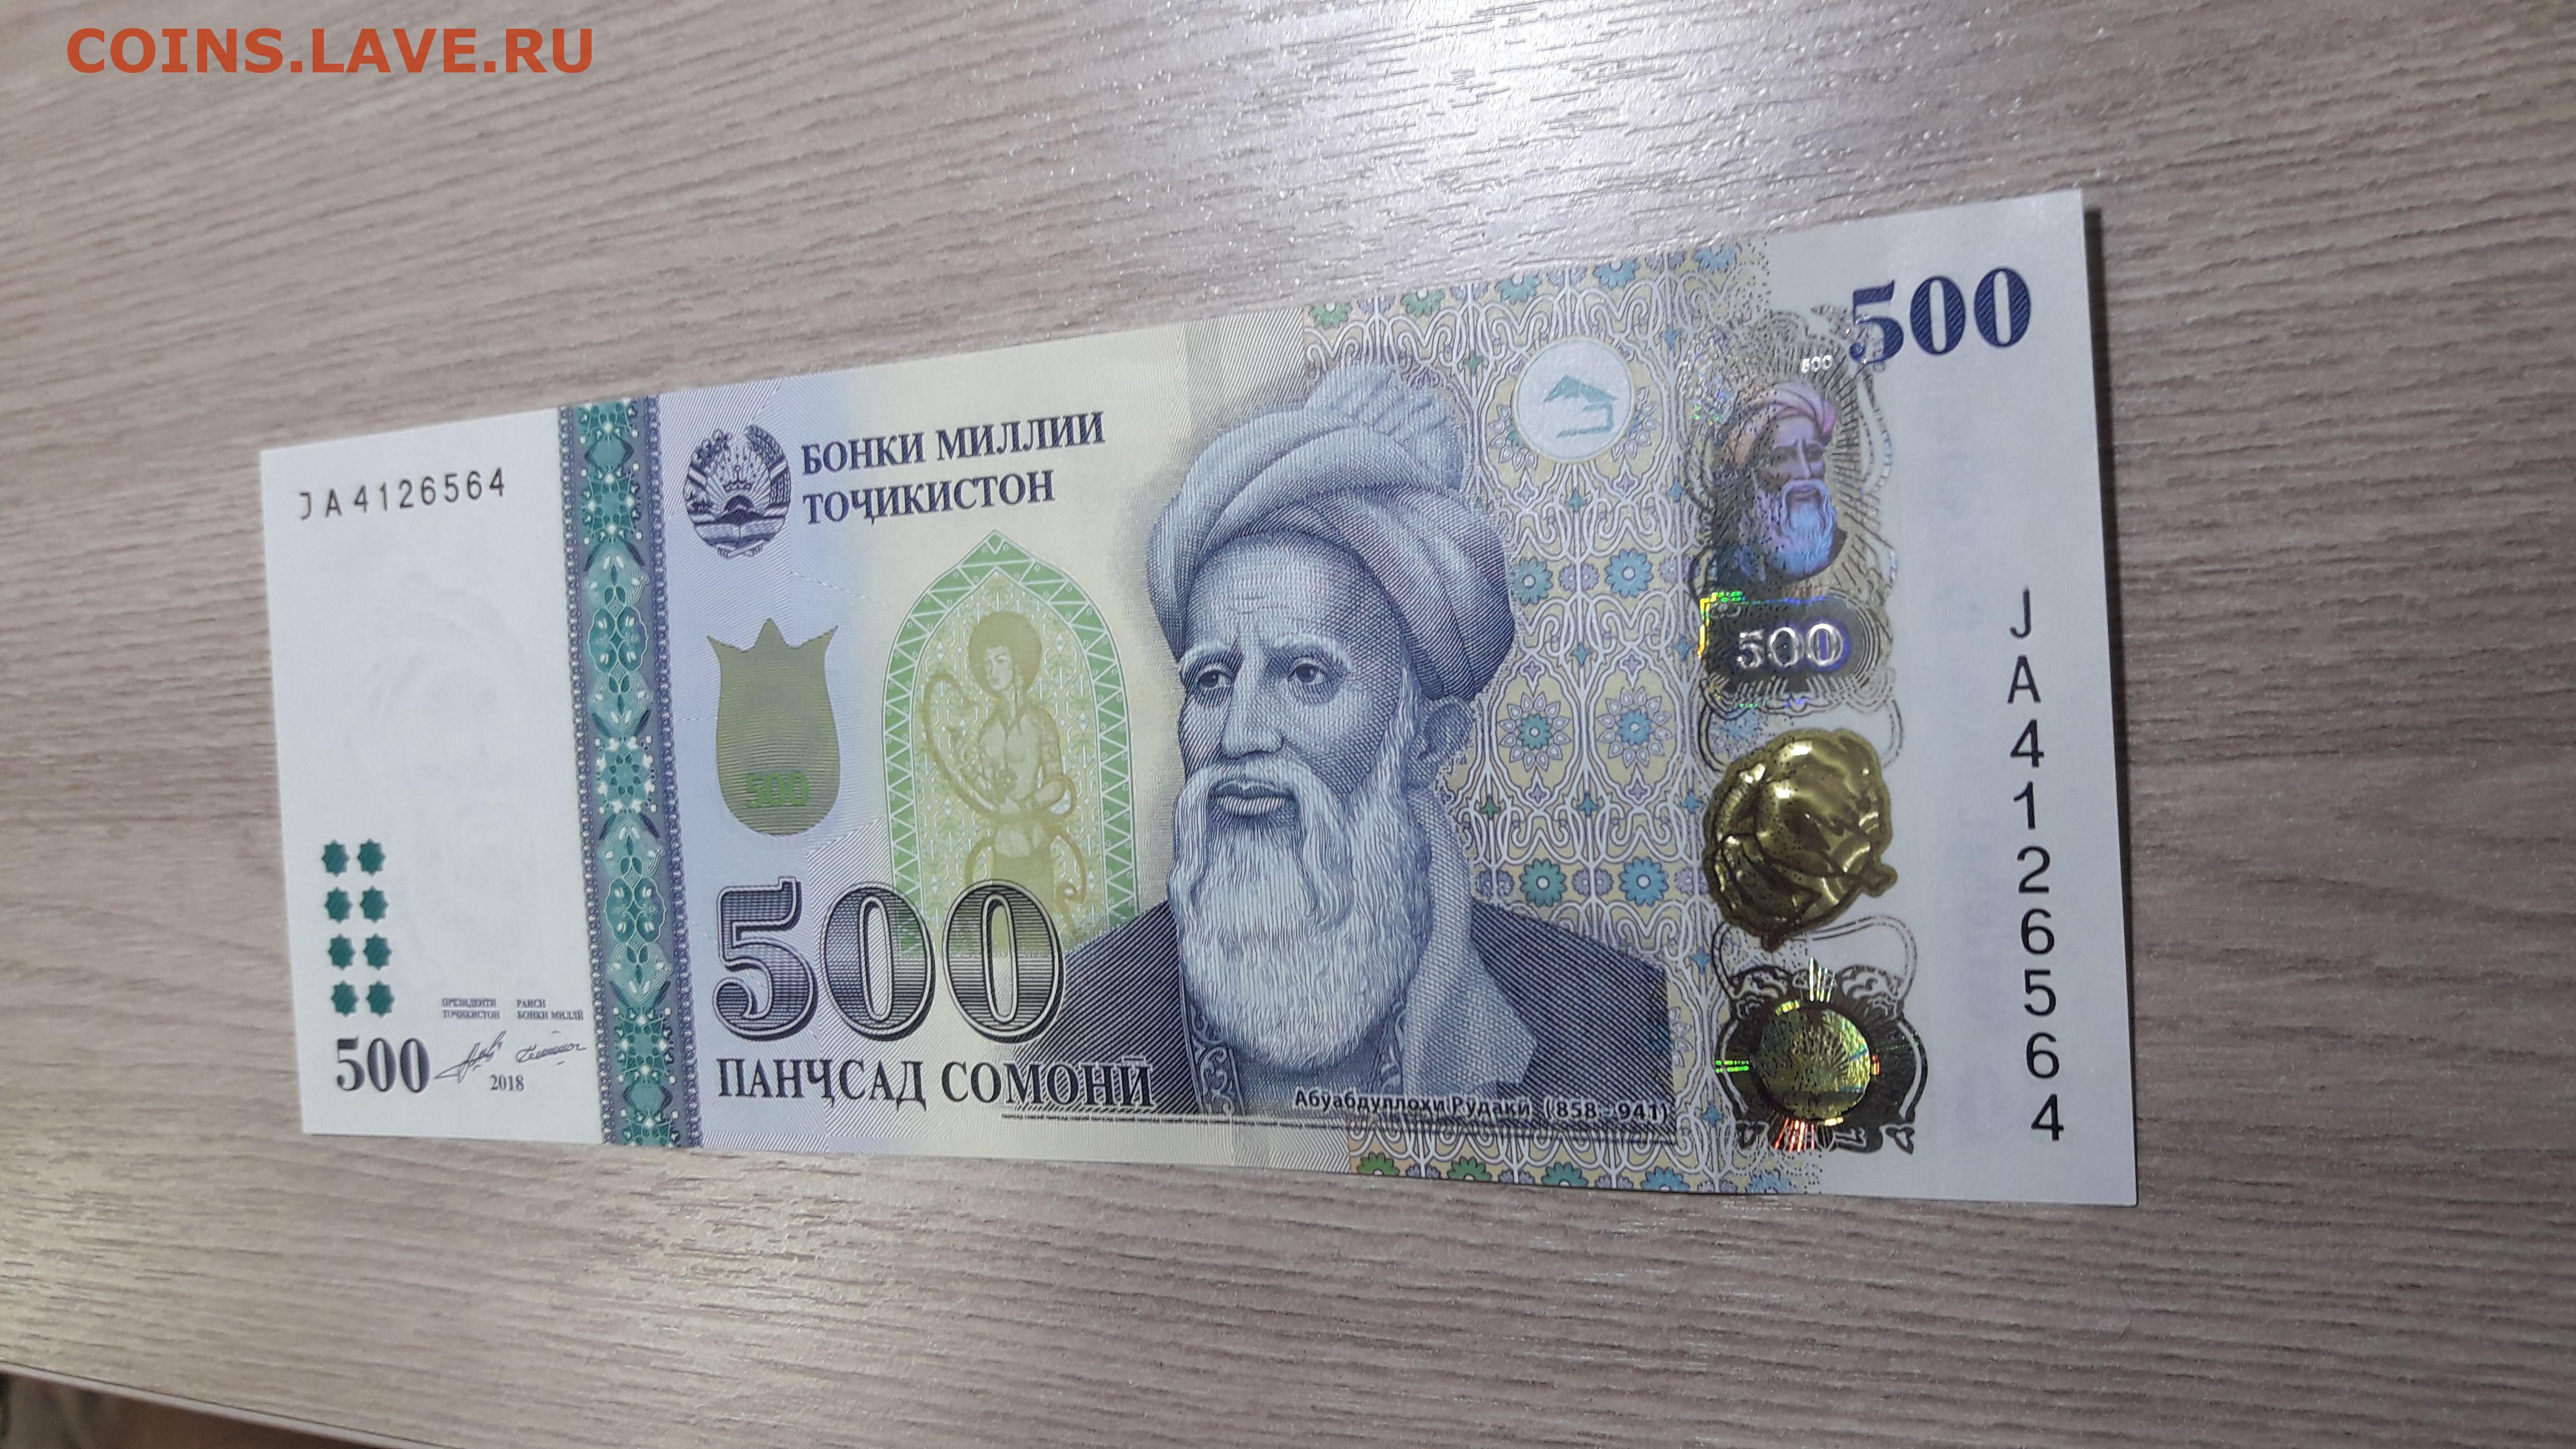 500 таджикски. Таджикский купюры 500 Сомони. Деньги Таджикистана 500 Сомони. 1000 Сомона. Купюра 500 Сомони.